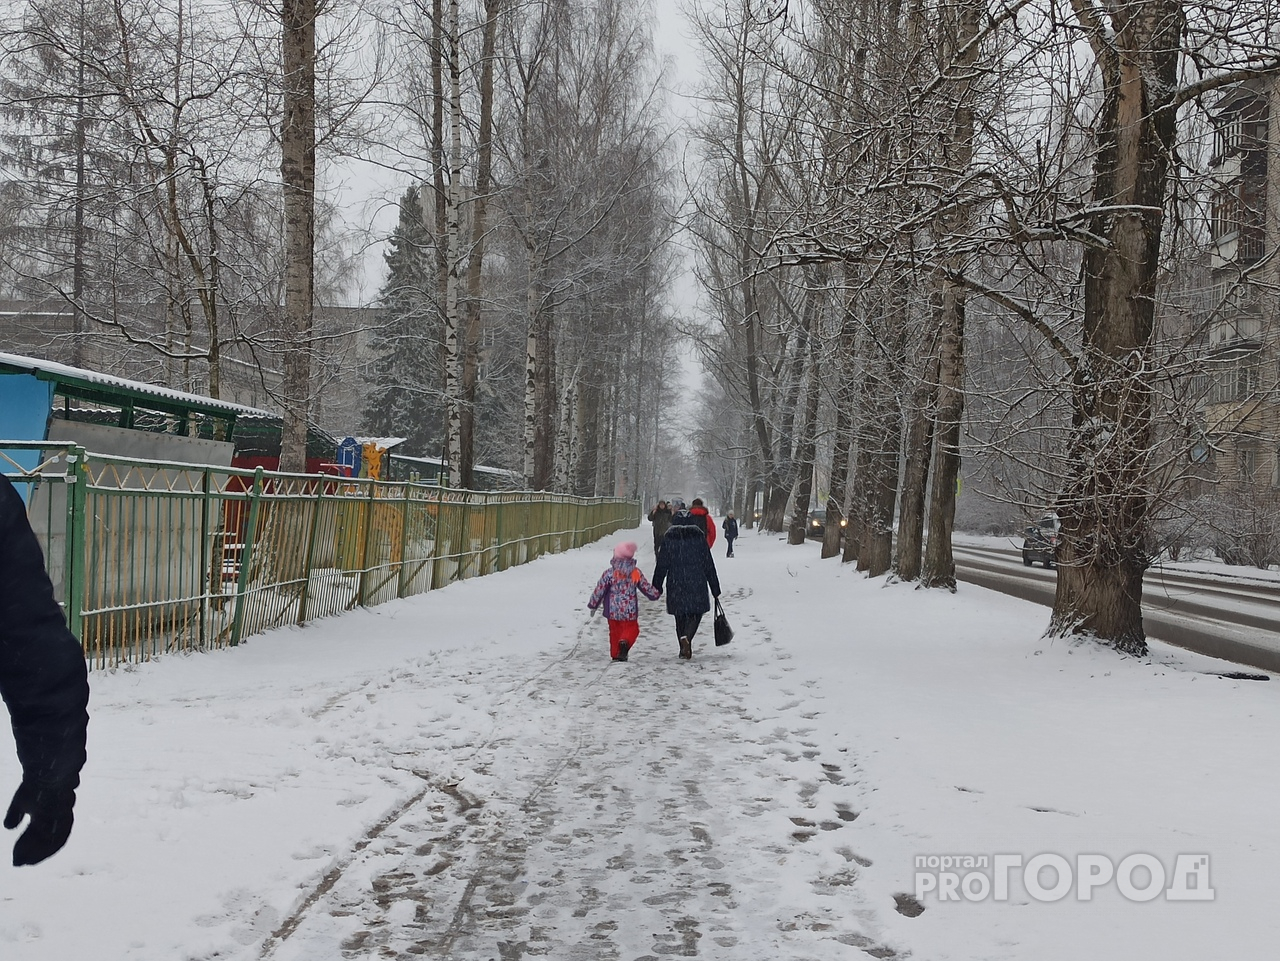 Доставайте зимние куртки: синоптики предупредили ярославцев о резком похолодании на выходных